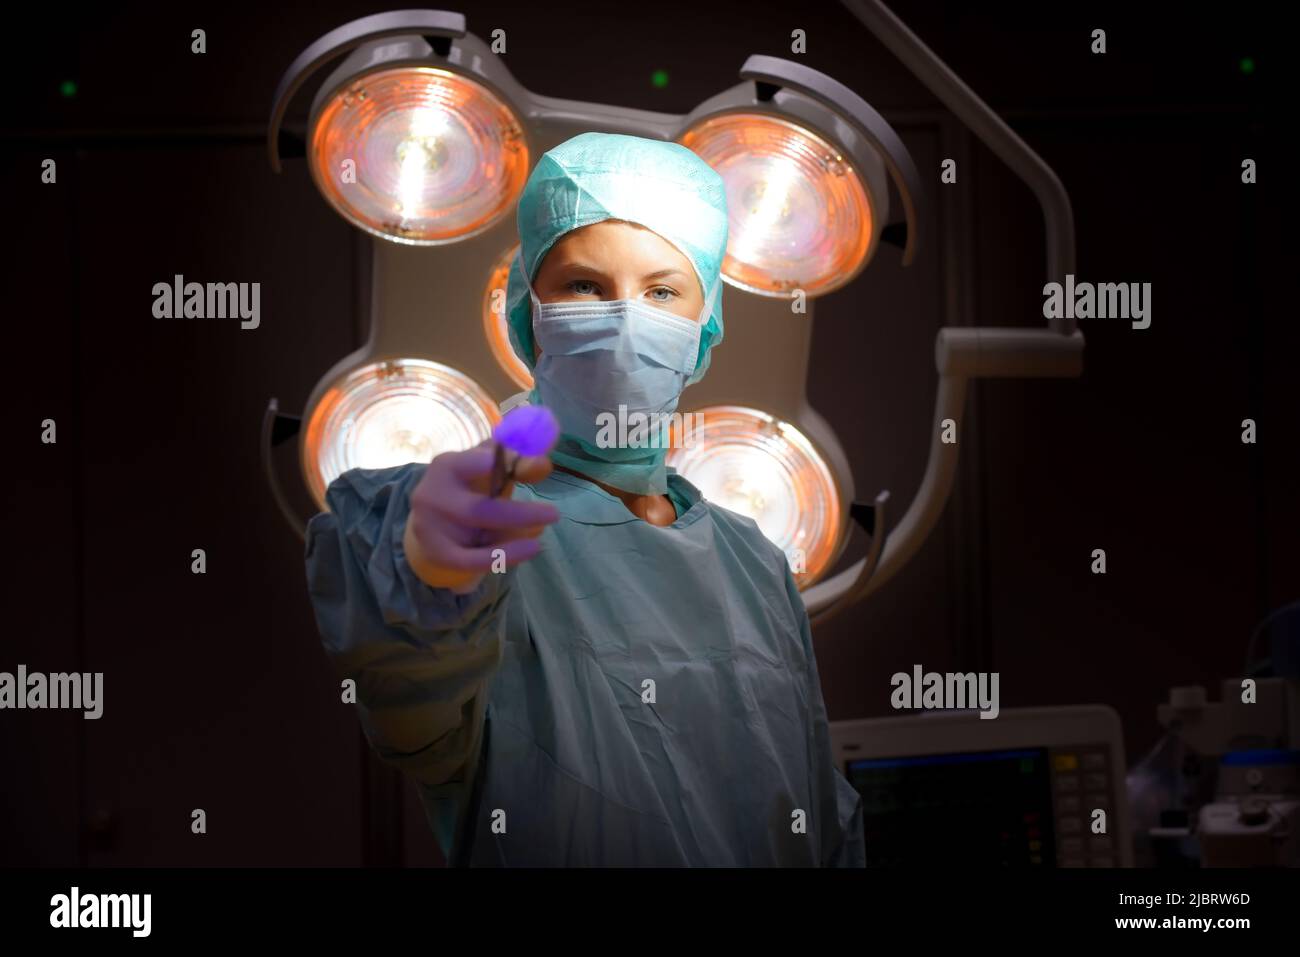 Una donna è vista in un teatro di funzionamento dell'ospedale. È completamente vestita come infermiera anestetica con una maschera facciale e indumenti chirurgici medici sterili. Foto Stock